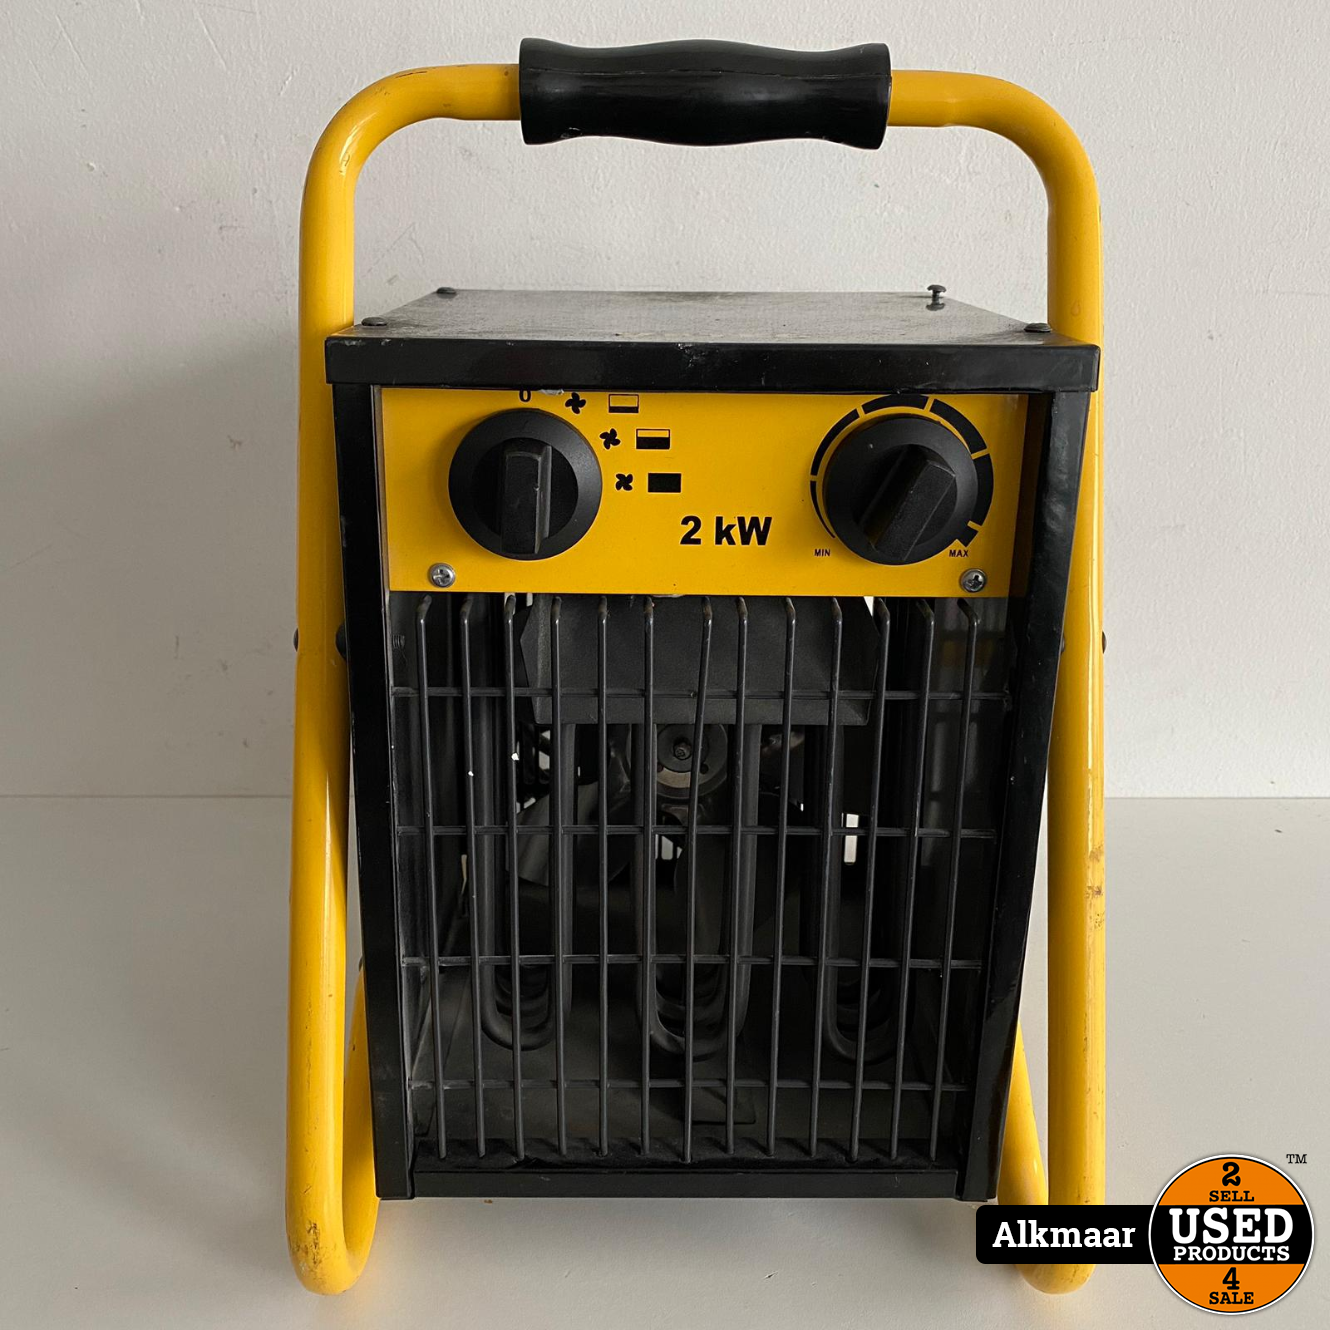 mot klem Apt Vetec VK2.0 Elektrische Heater | Gebruikt - Used Products Alkmaar